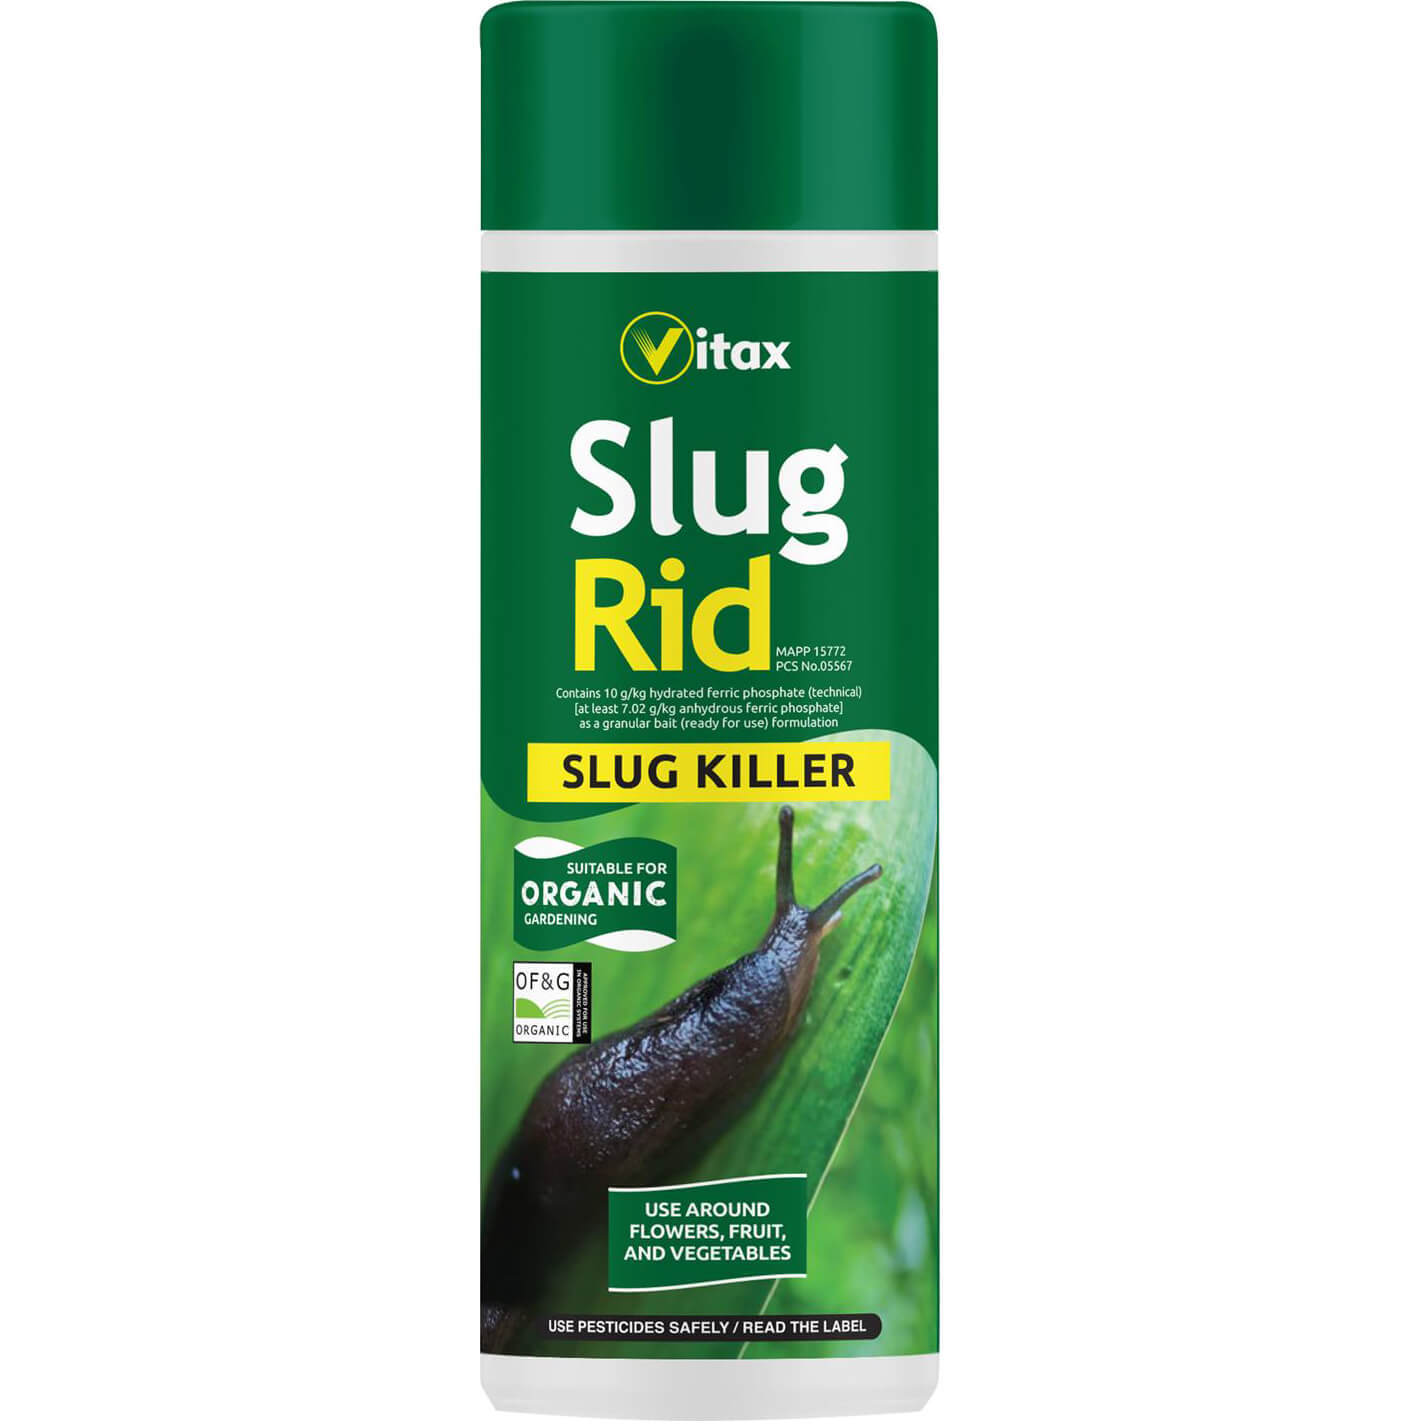 Image of Vitax Slug Rid Pellets for Killing Slugs 500g